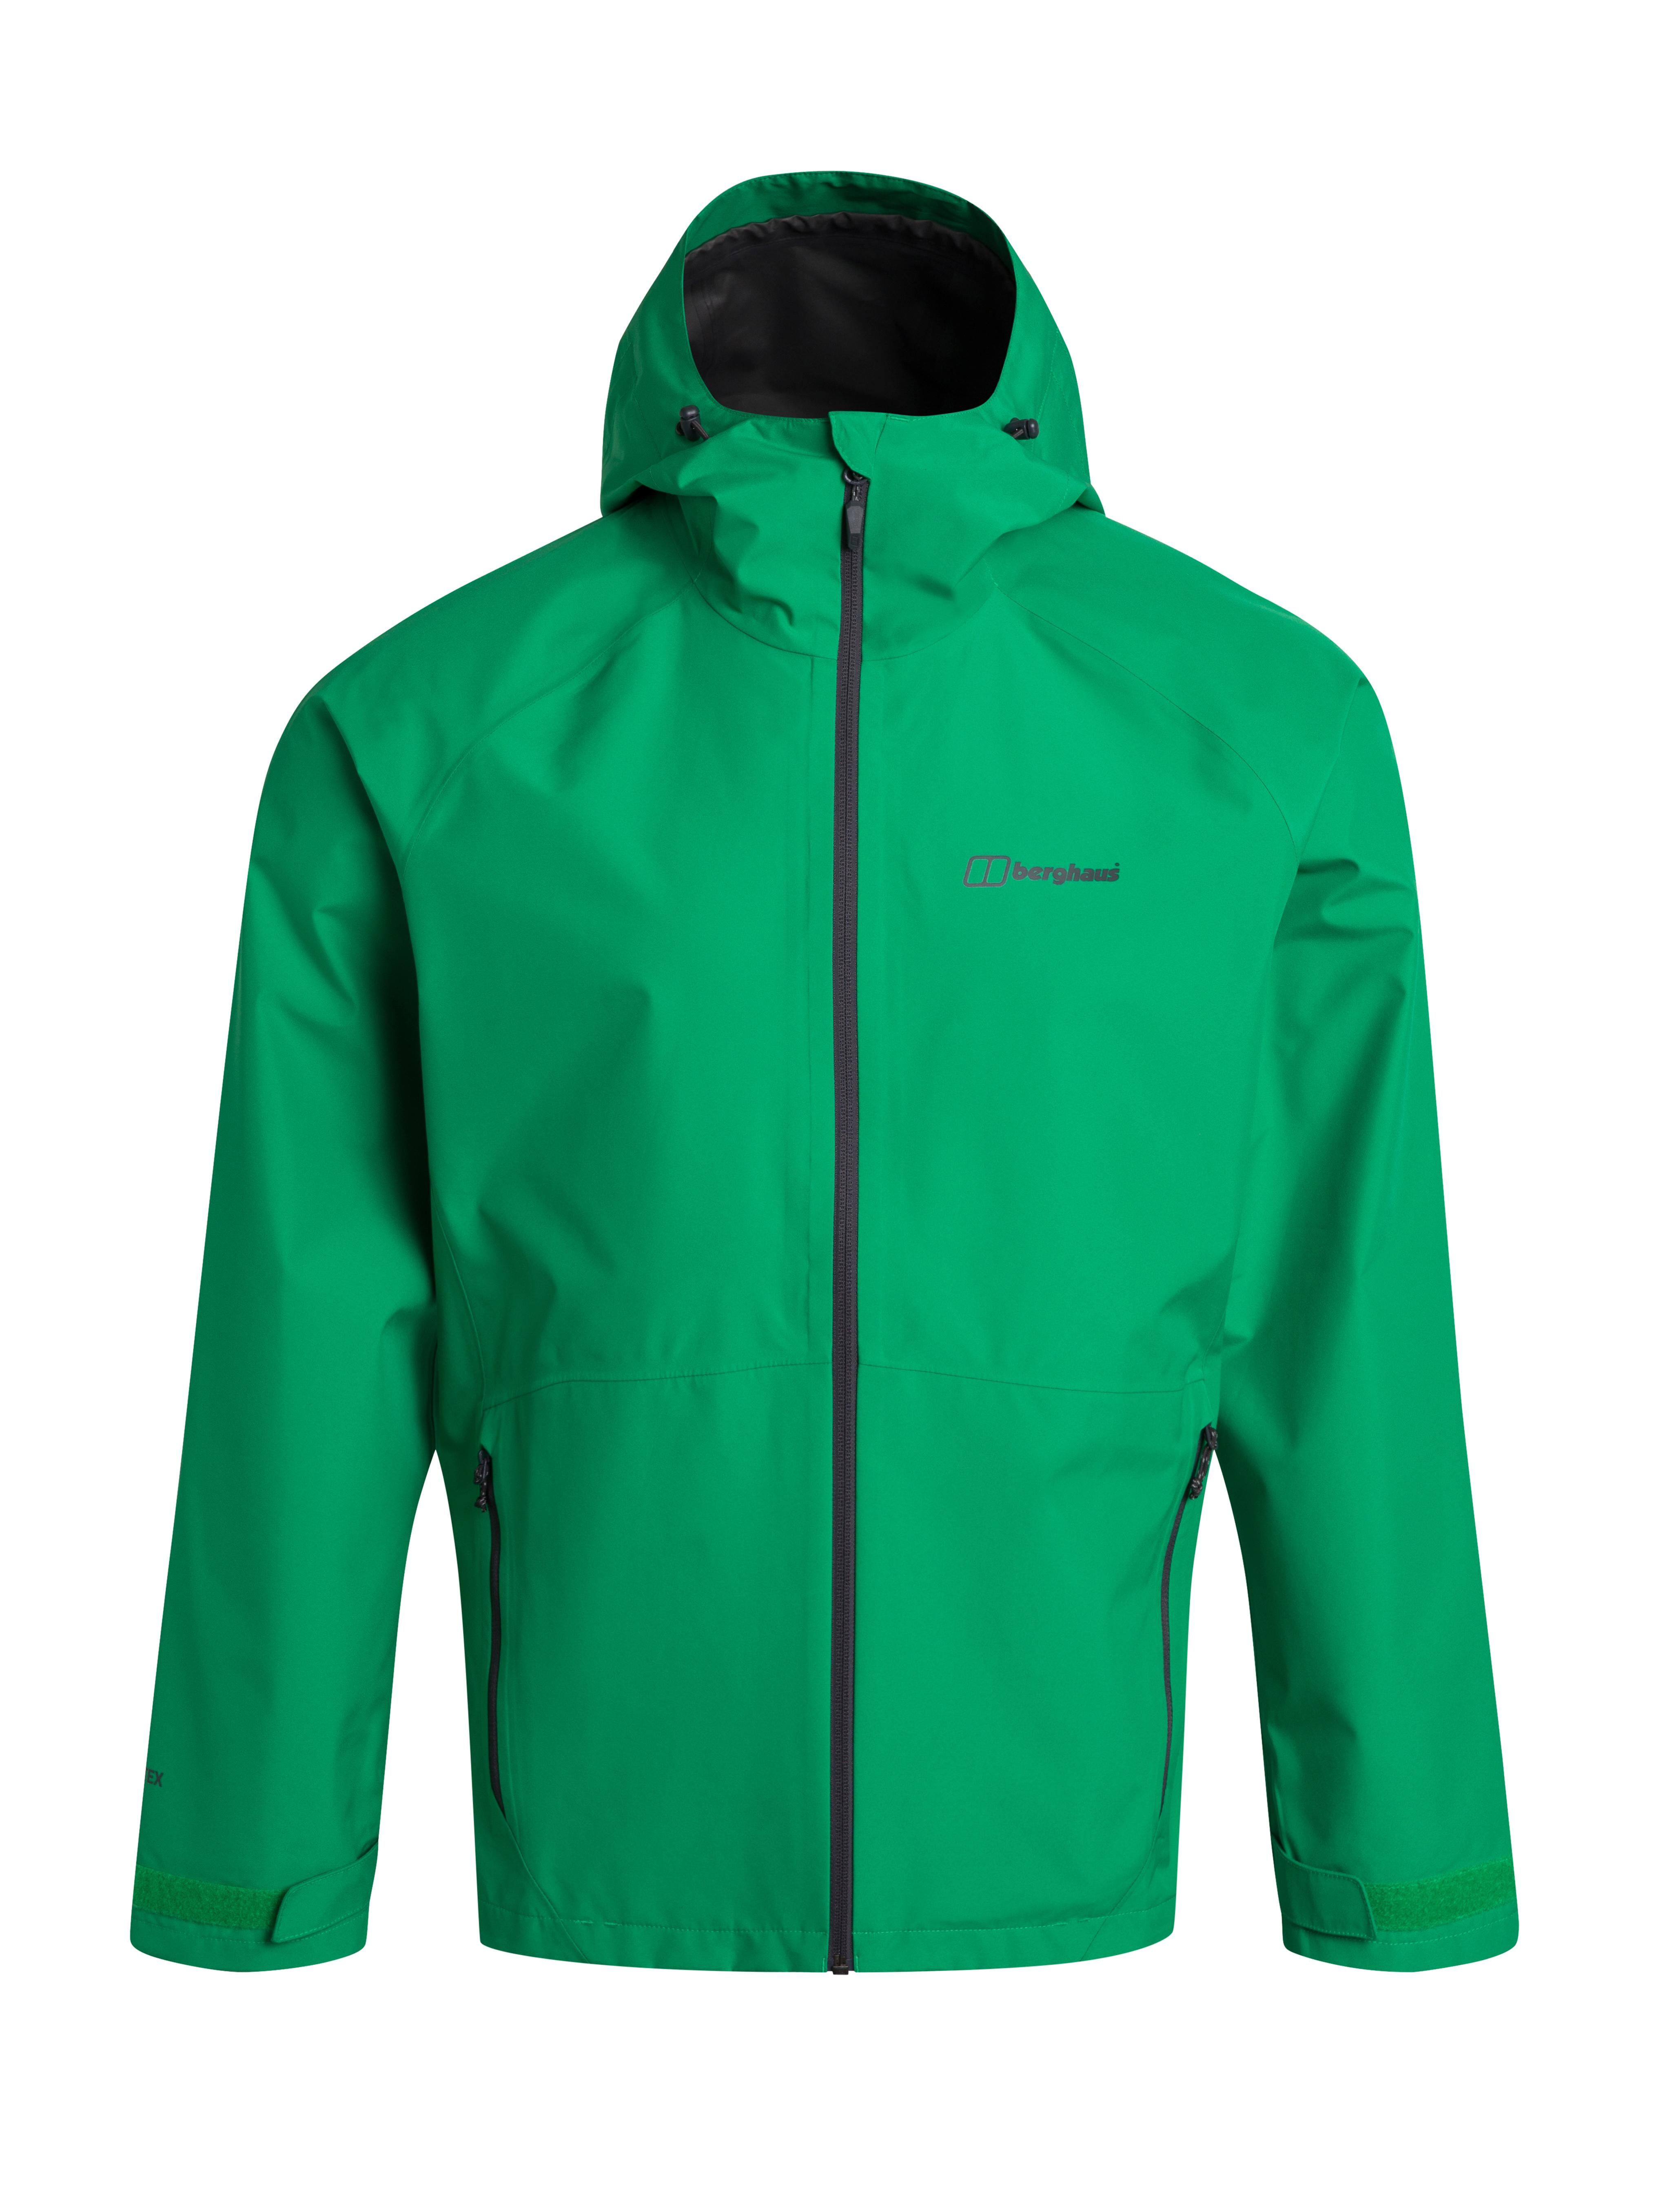 Berghaus Paclite 2.0 Waterproof Jacket - Waterproof jacket - Men's